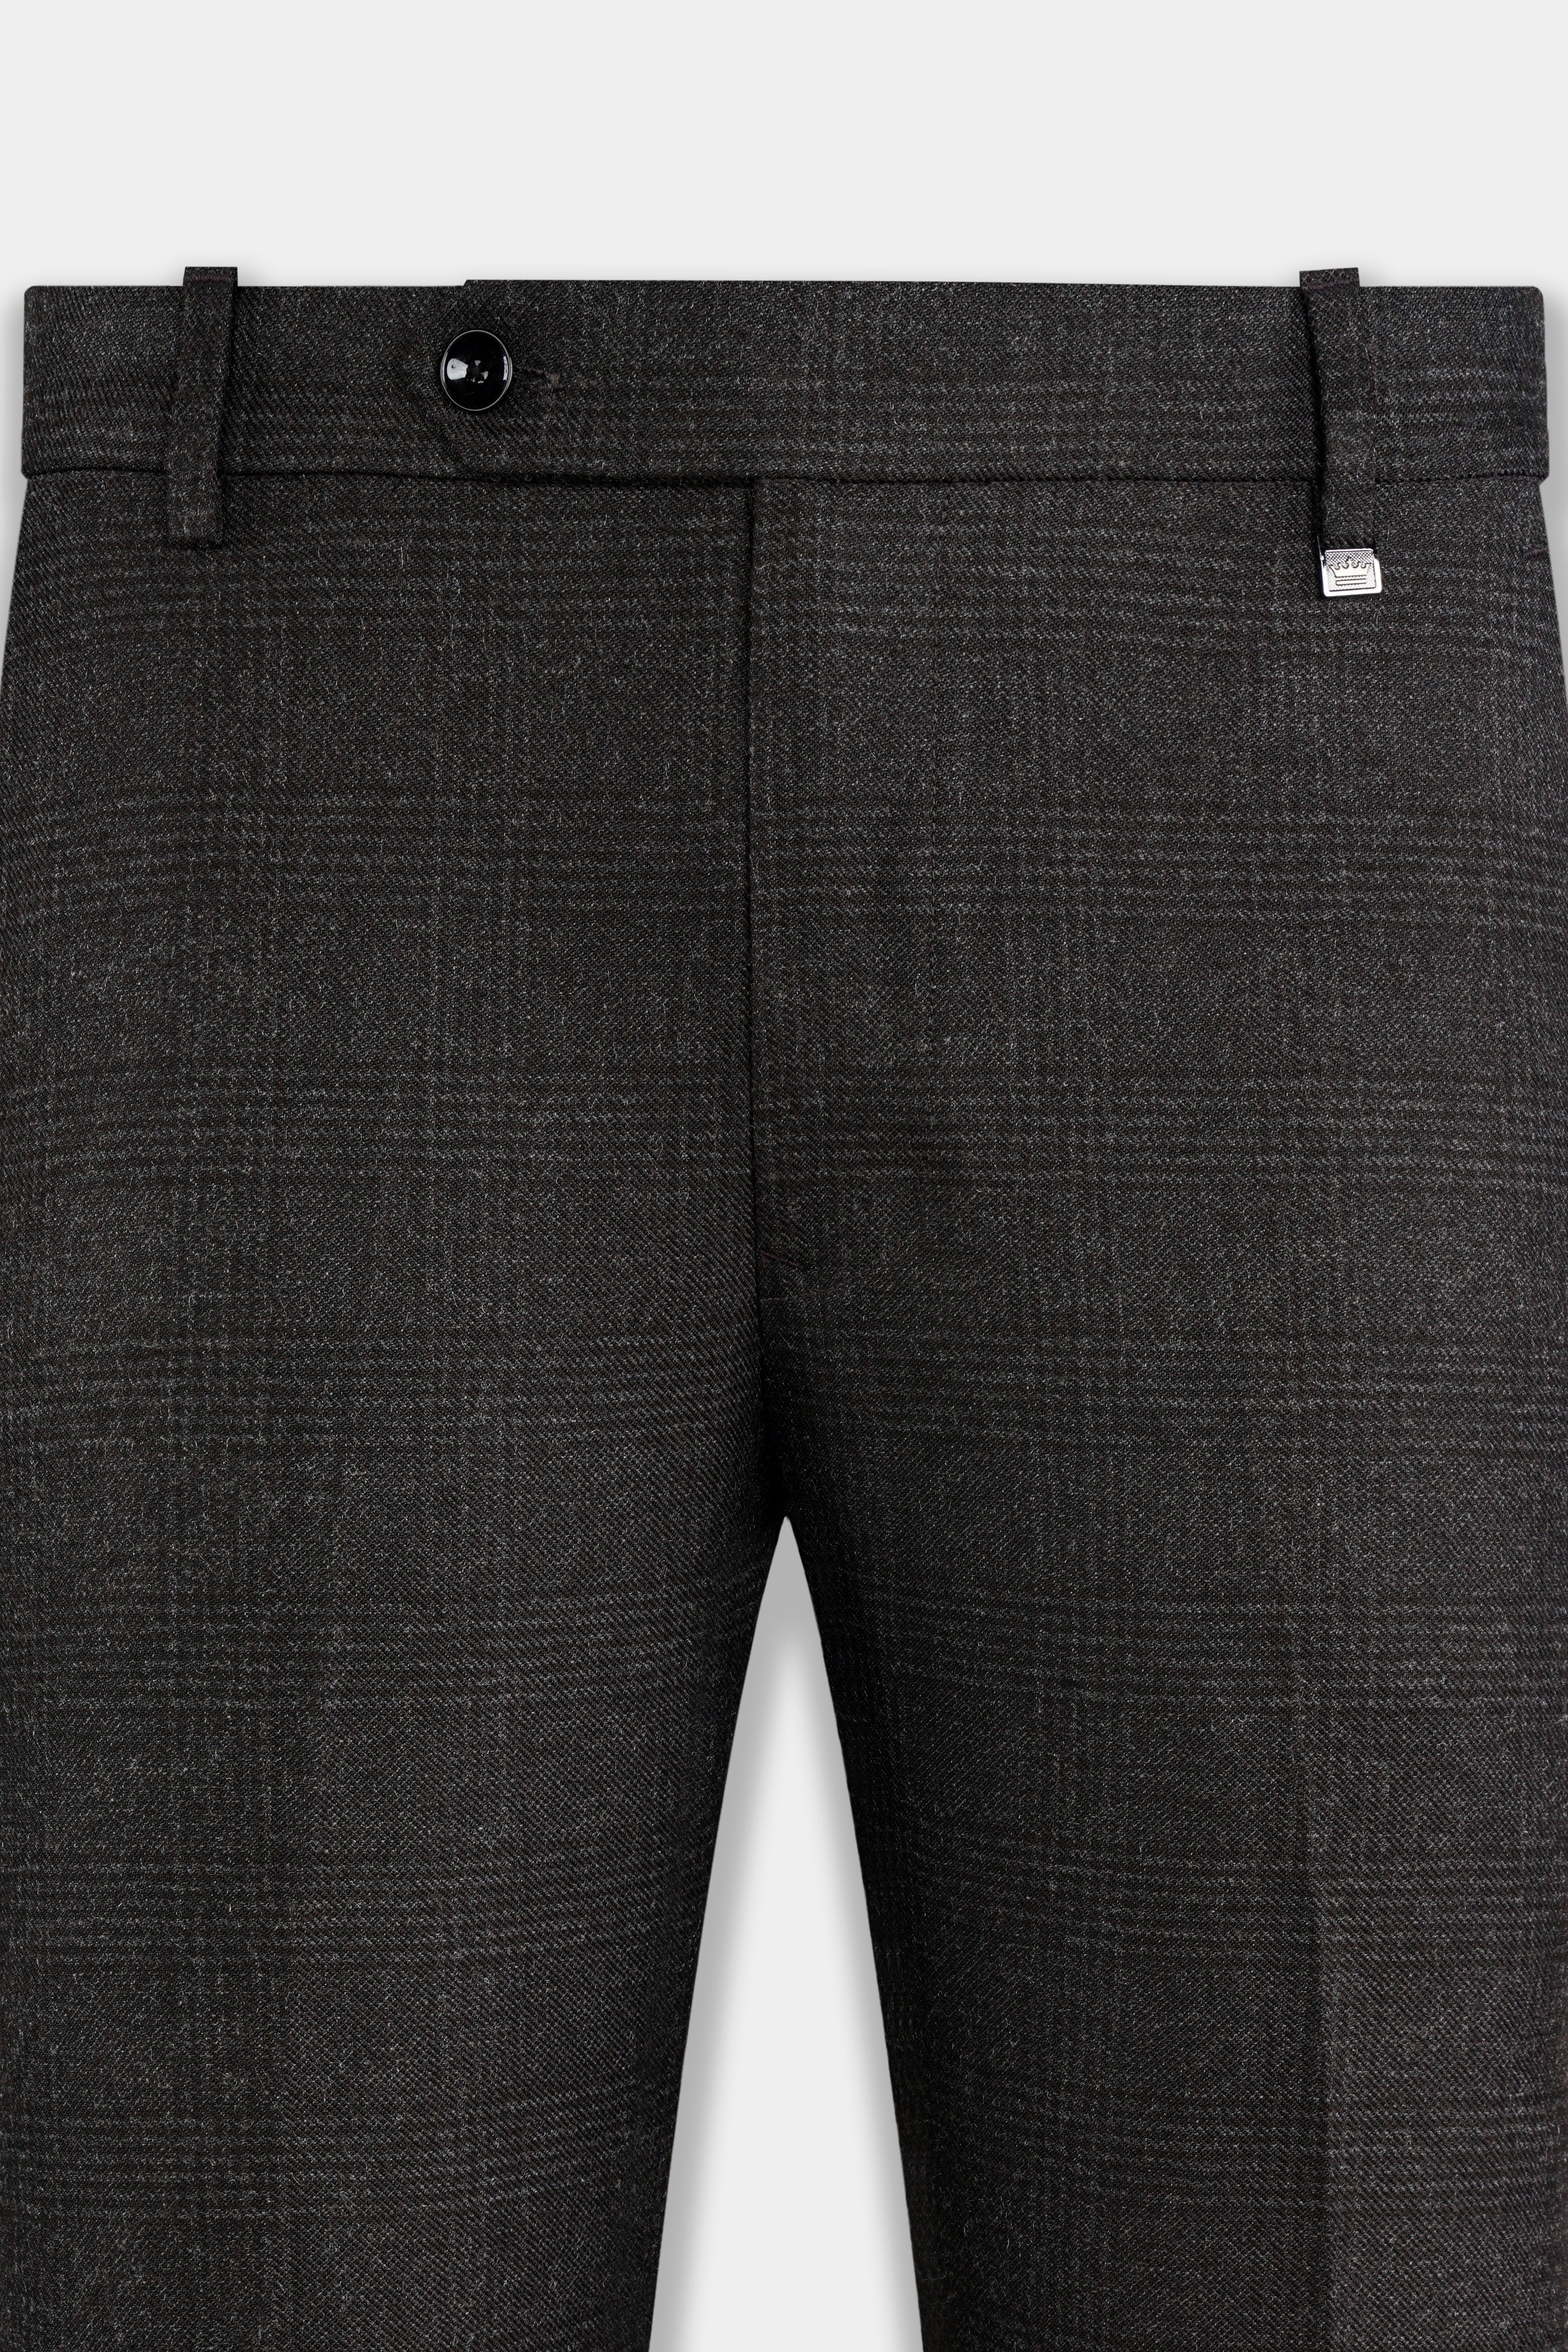 Mirage Gray Subtle Plaid Wool rich Pant